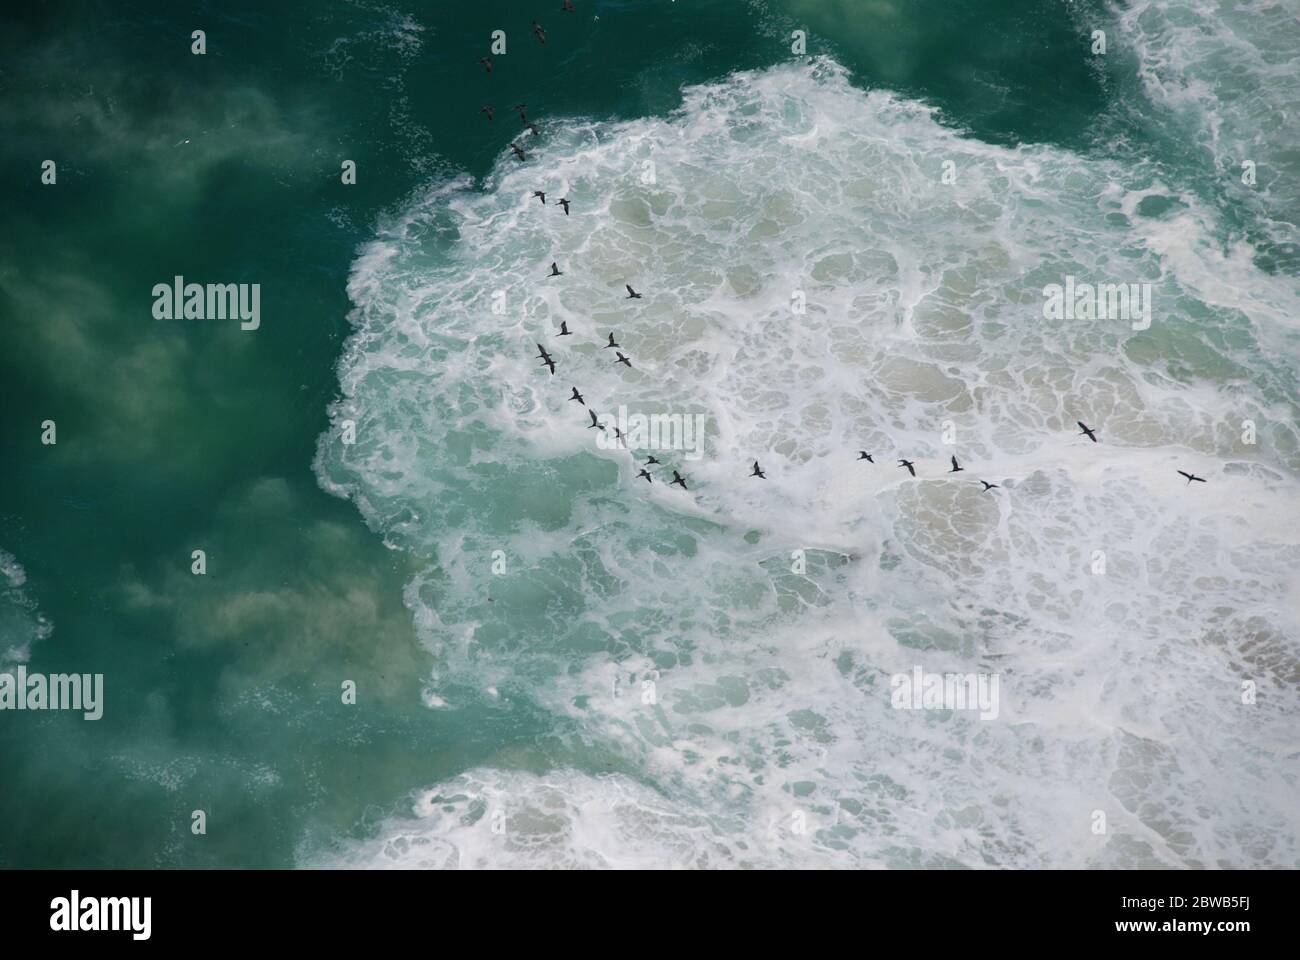 Linea costiera selvaggia con scogliere e onde che si infrangono sparate dall'alto con un gregge di uccelli che volano in alto. Vista aerea/BirdsEye. Girato in Sud Africa. Foto Stock